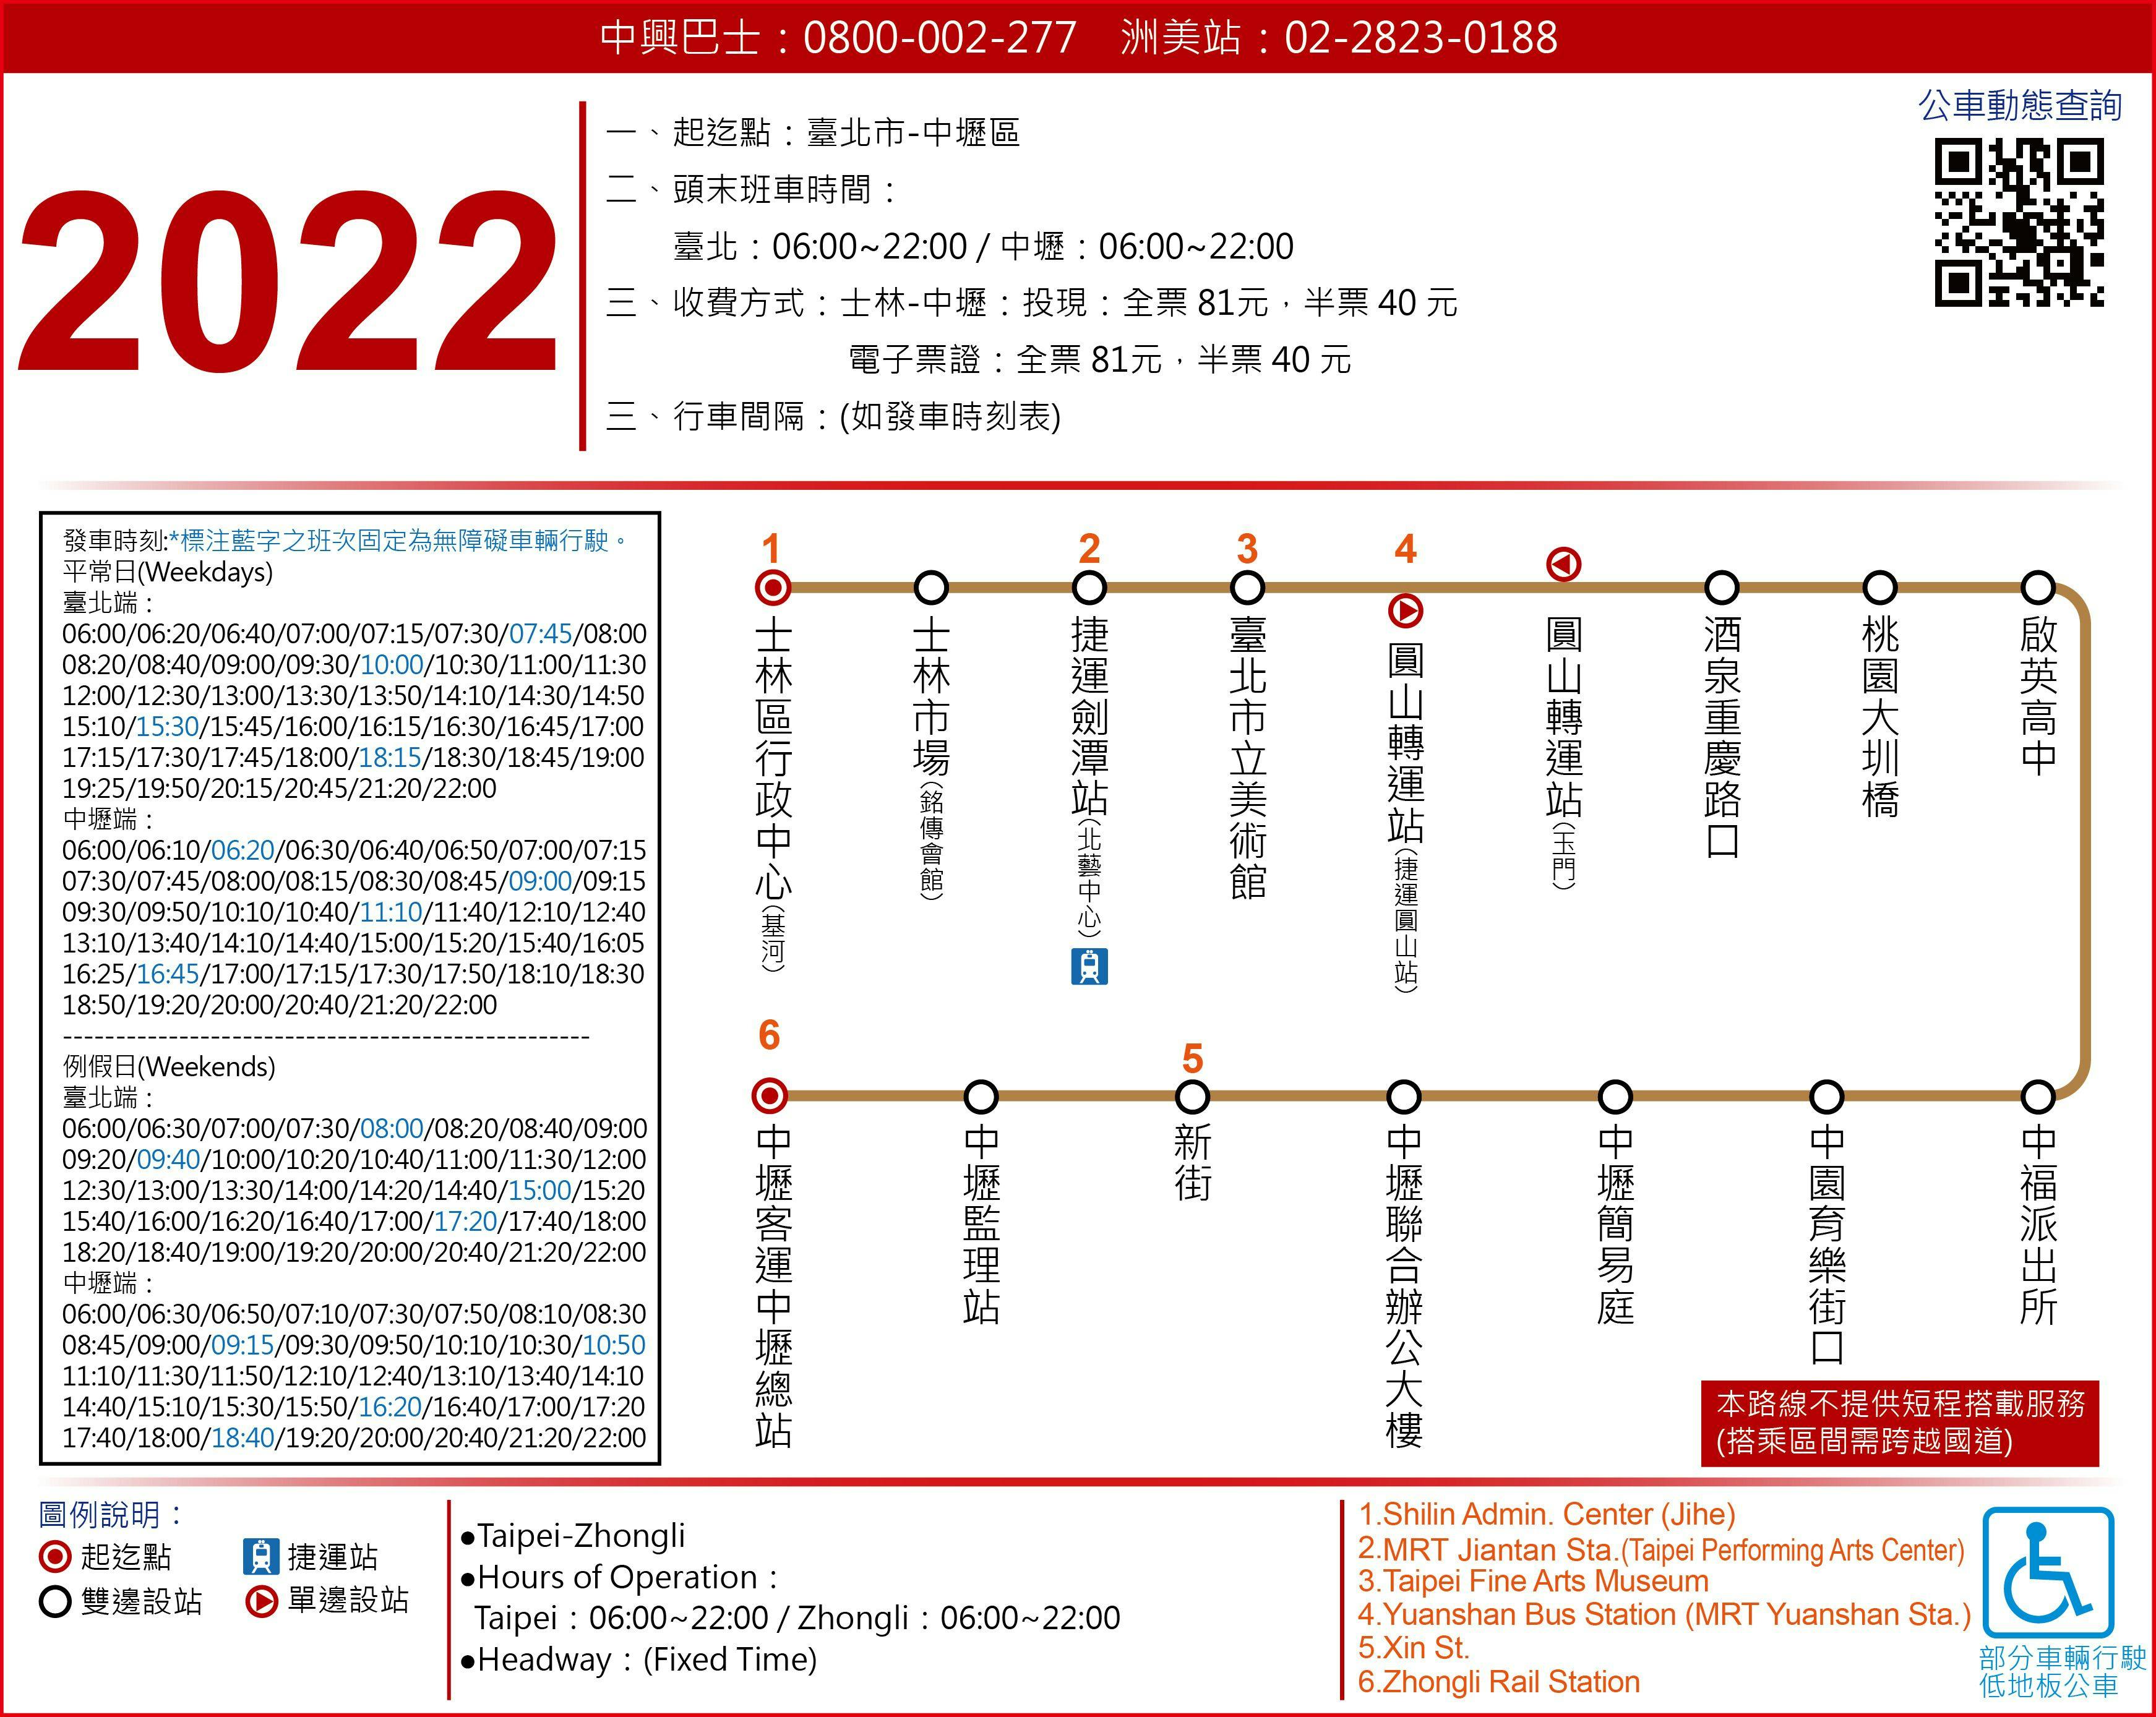 2022Route Map-Zhongxing Bus